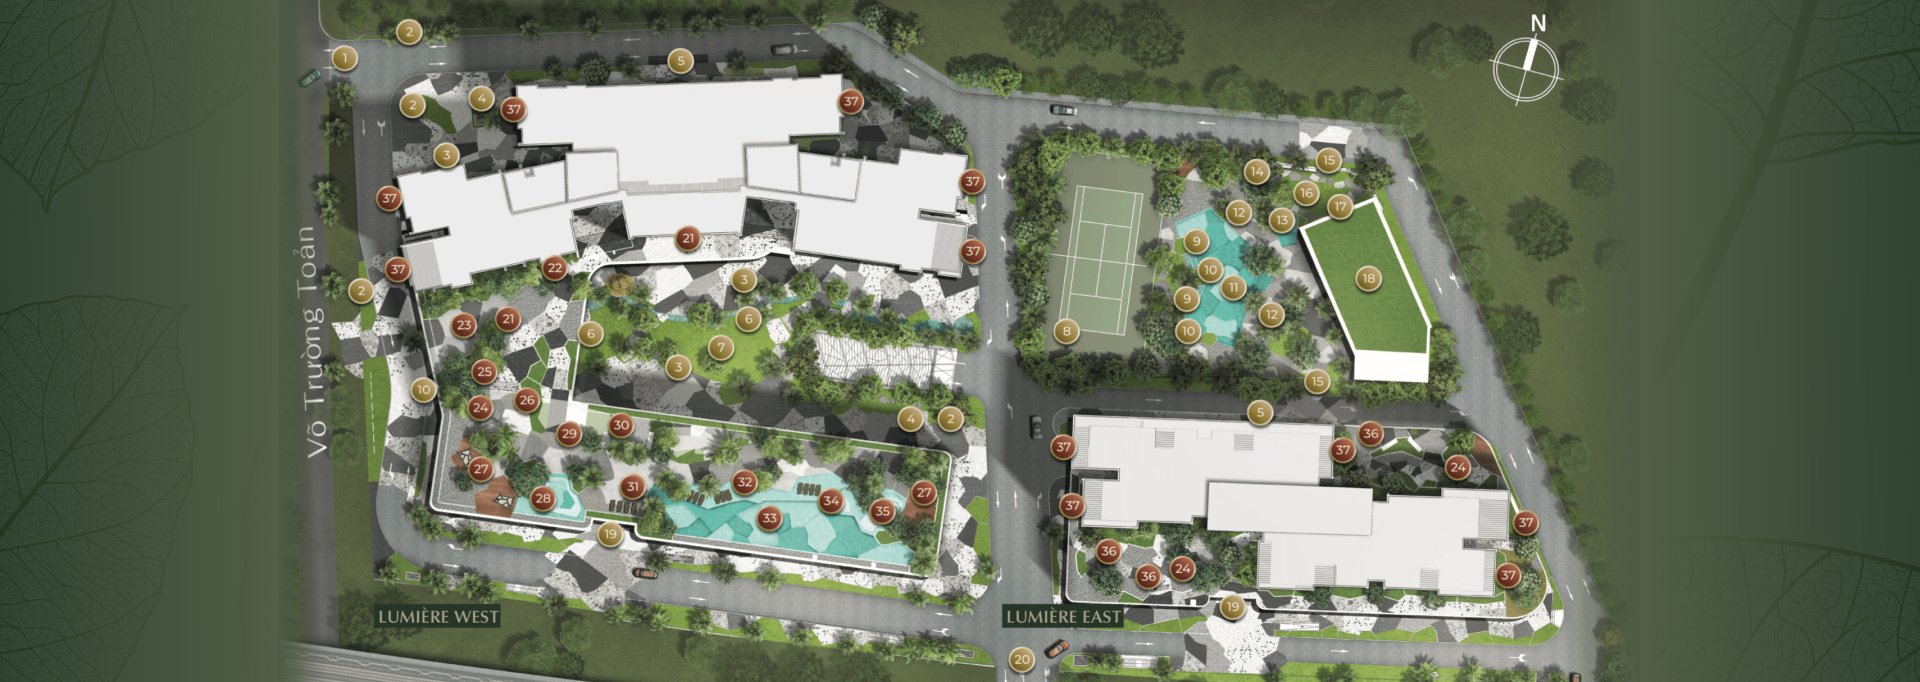 masterplan 2 2 -  Căn Hộ 3 Phòng Ngủ Ngọt Ngào & Sang Trọng với View Sông & Sân Vườn Riêng tại LUMIÈRE Riverside 